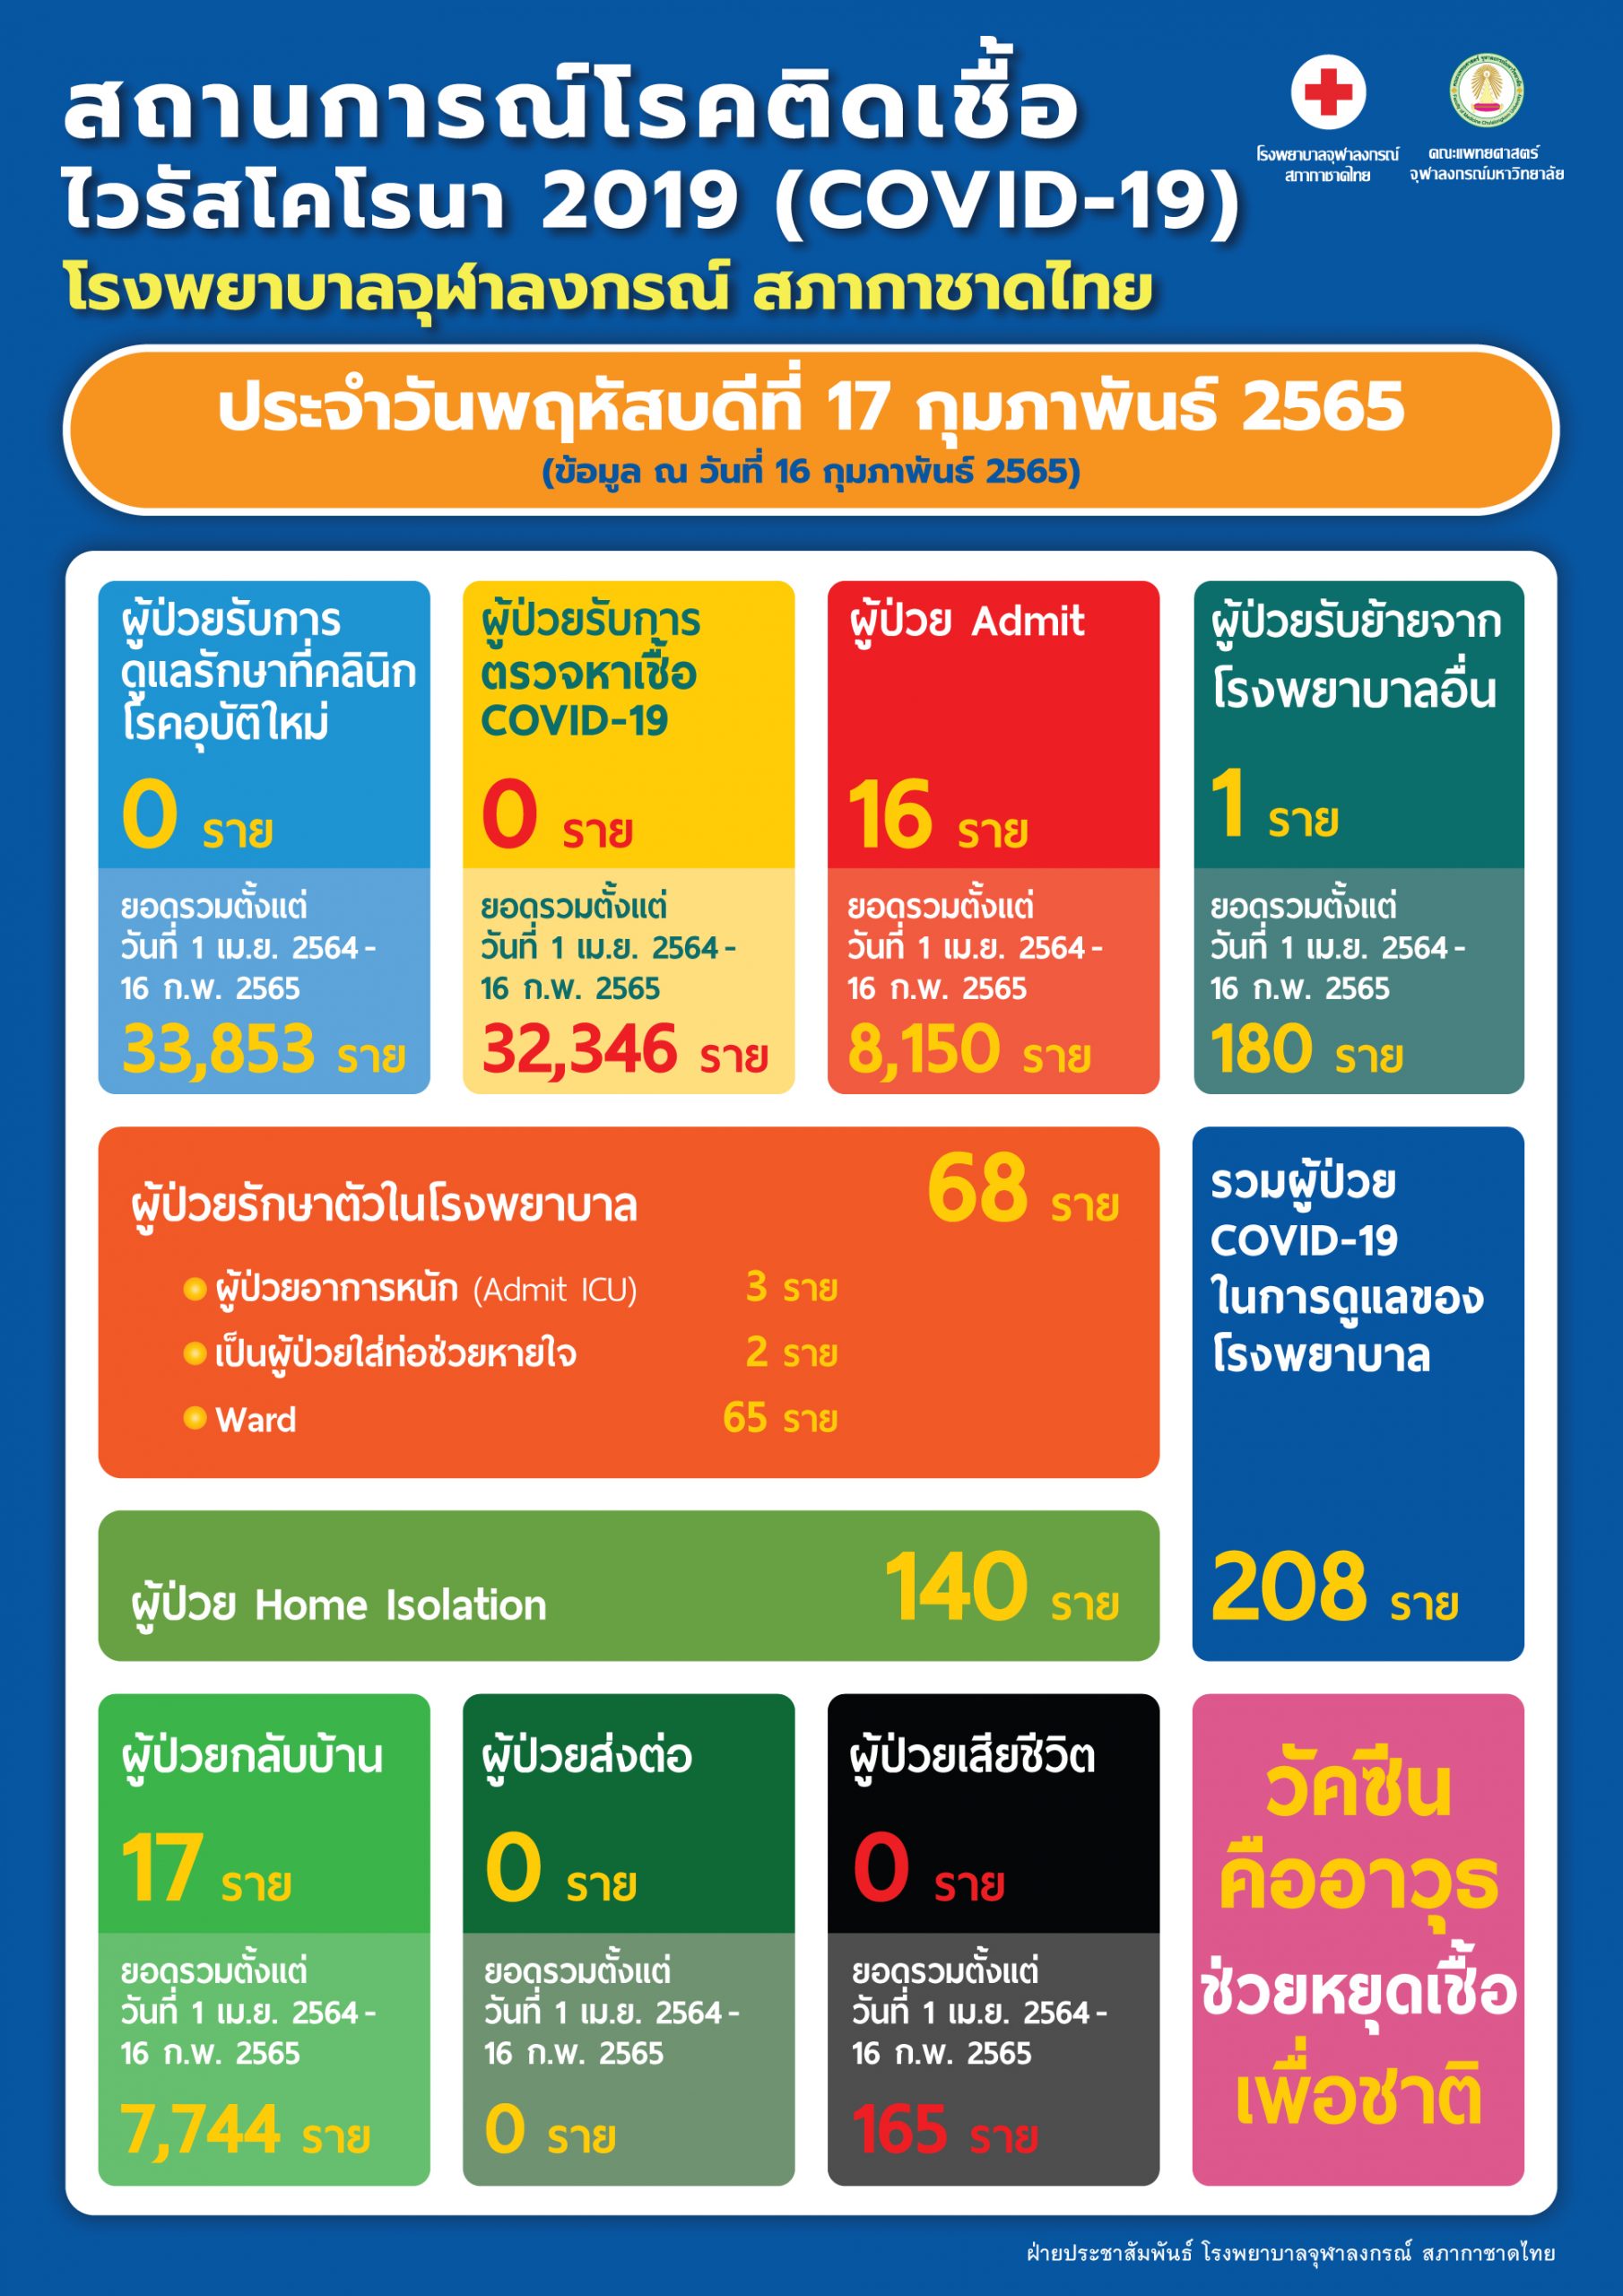 สถานการณ์โรคติดเชื้อไวรัสโคโรนา 2019 (COVID-19) โรงพยาบาลจุฬาลงกรณ์ สภากาชาดไทย ประจำวันพฤหัสบดีที่ 17 กุมภาพันธ์ 2565